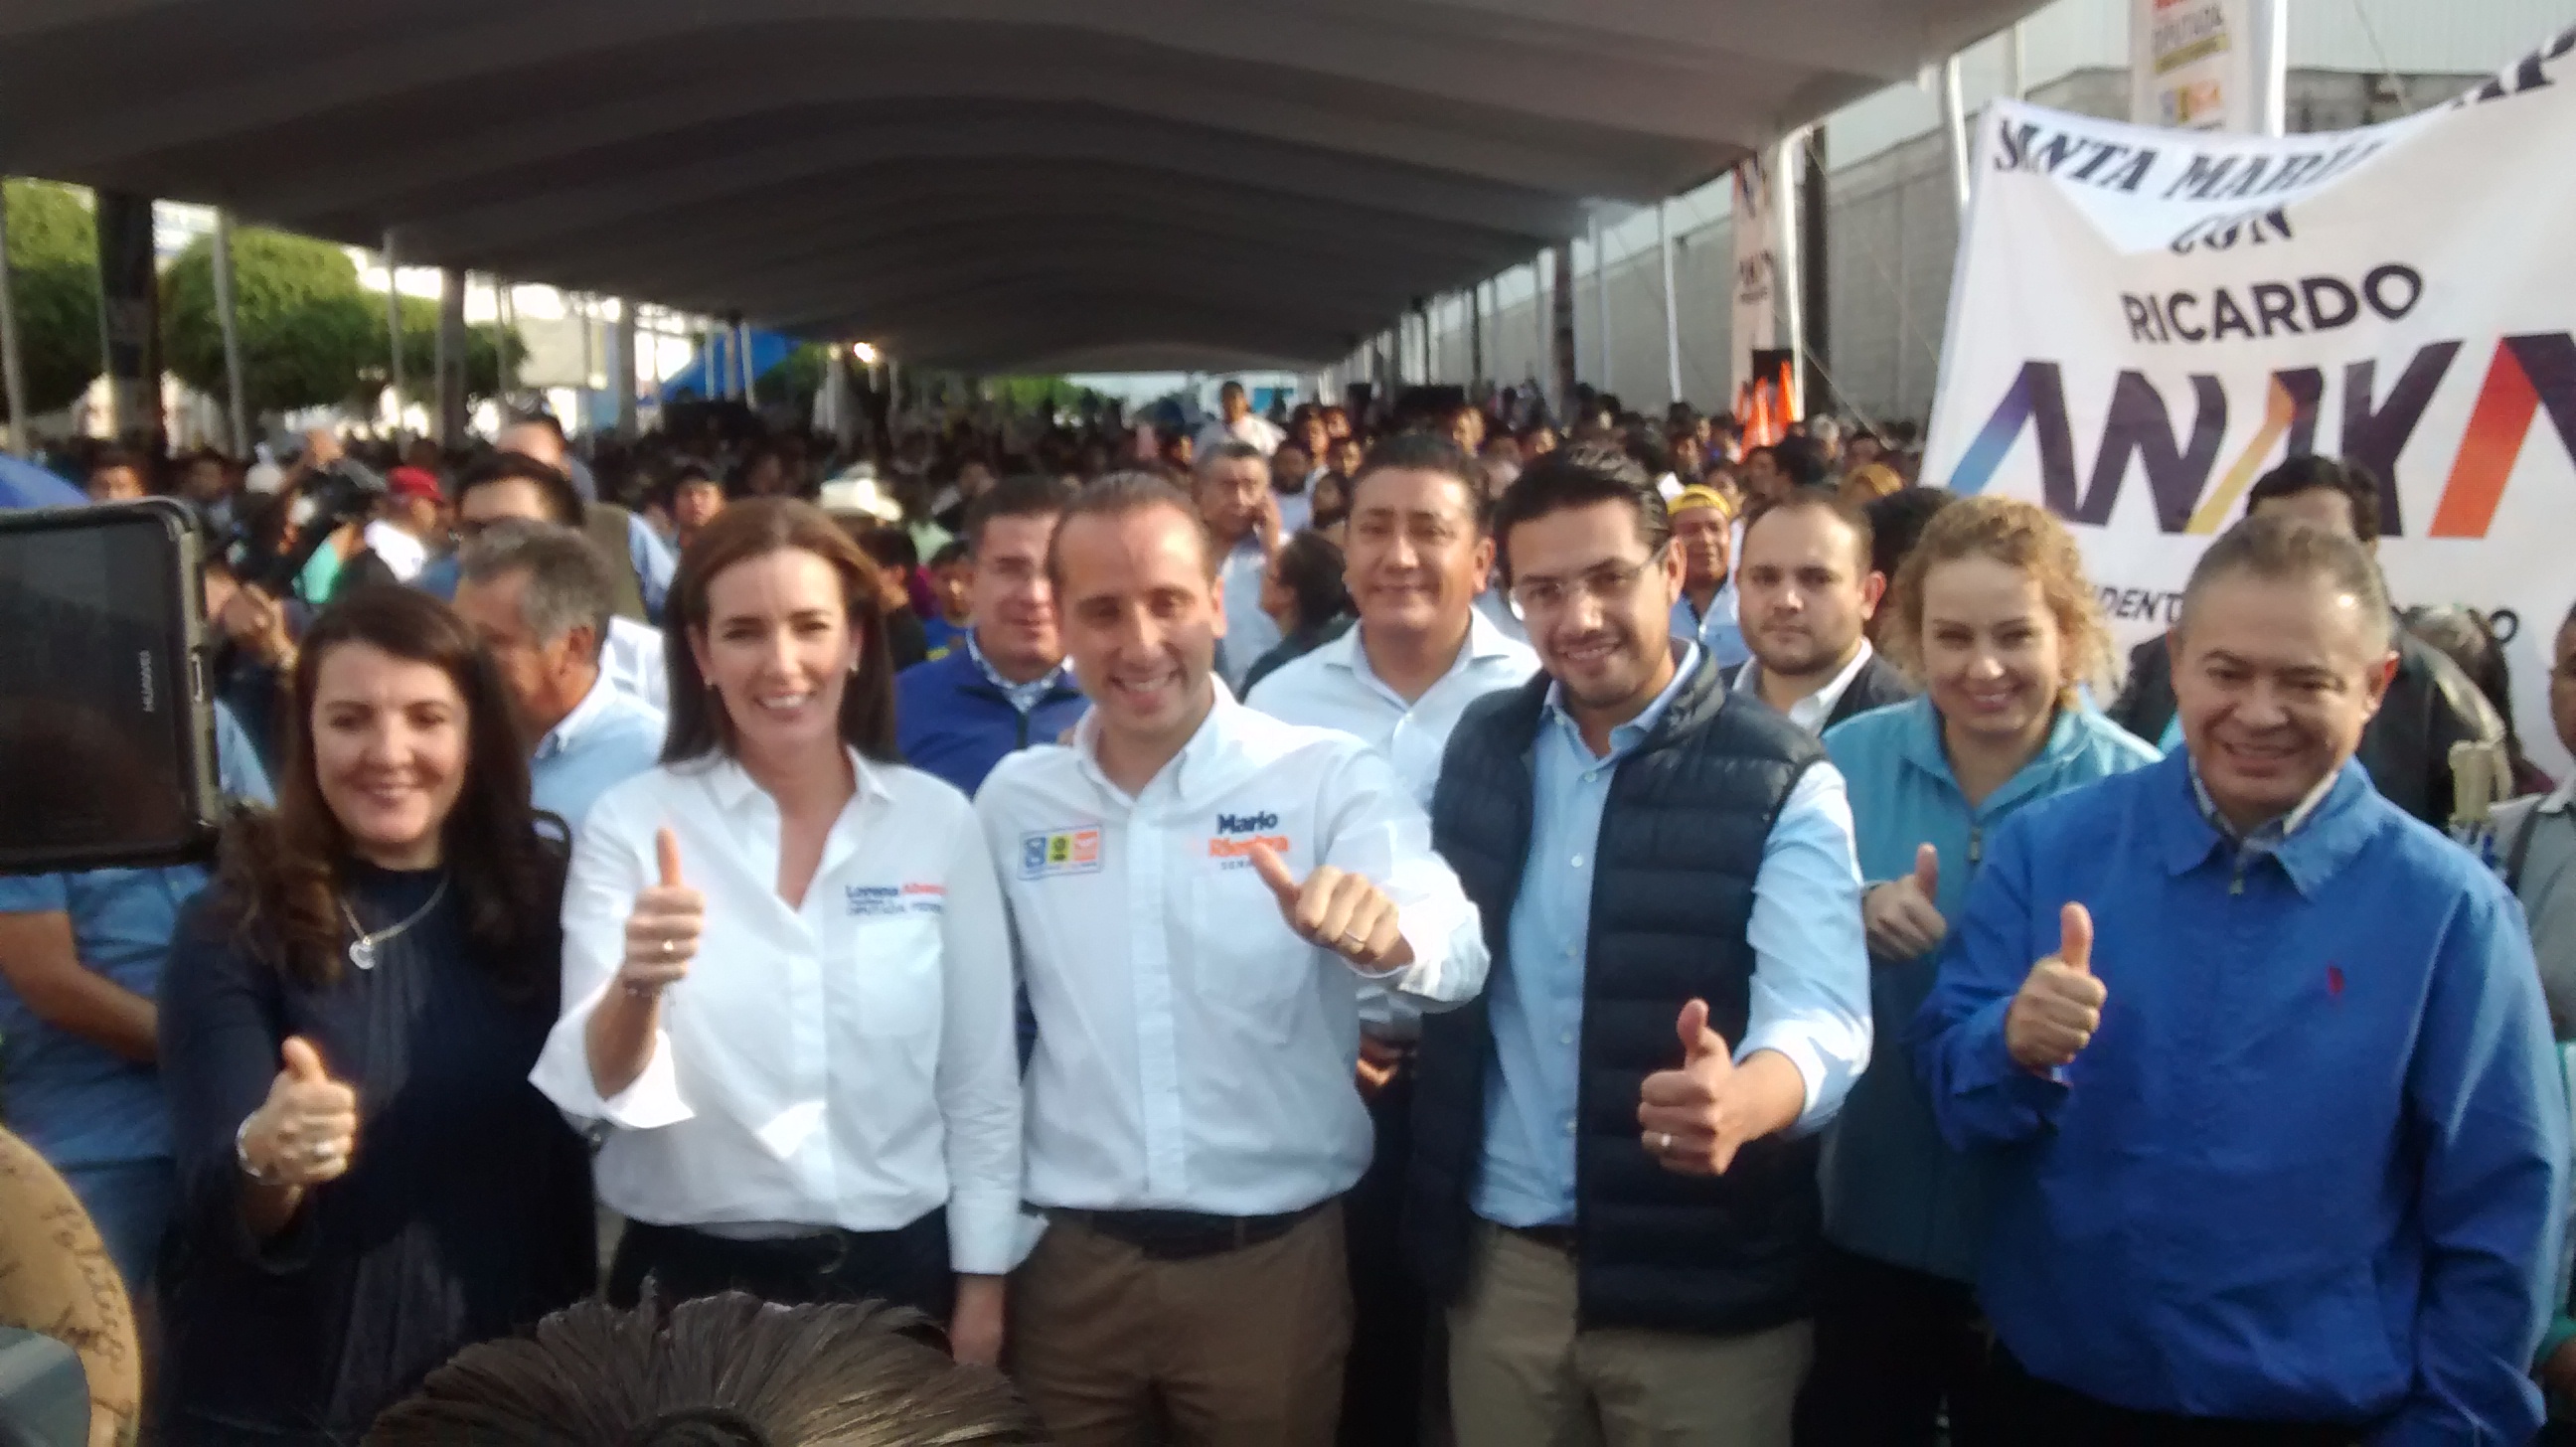 Votar por Morena en Puebla es votar por Marín: Ricardo Anaya  